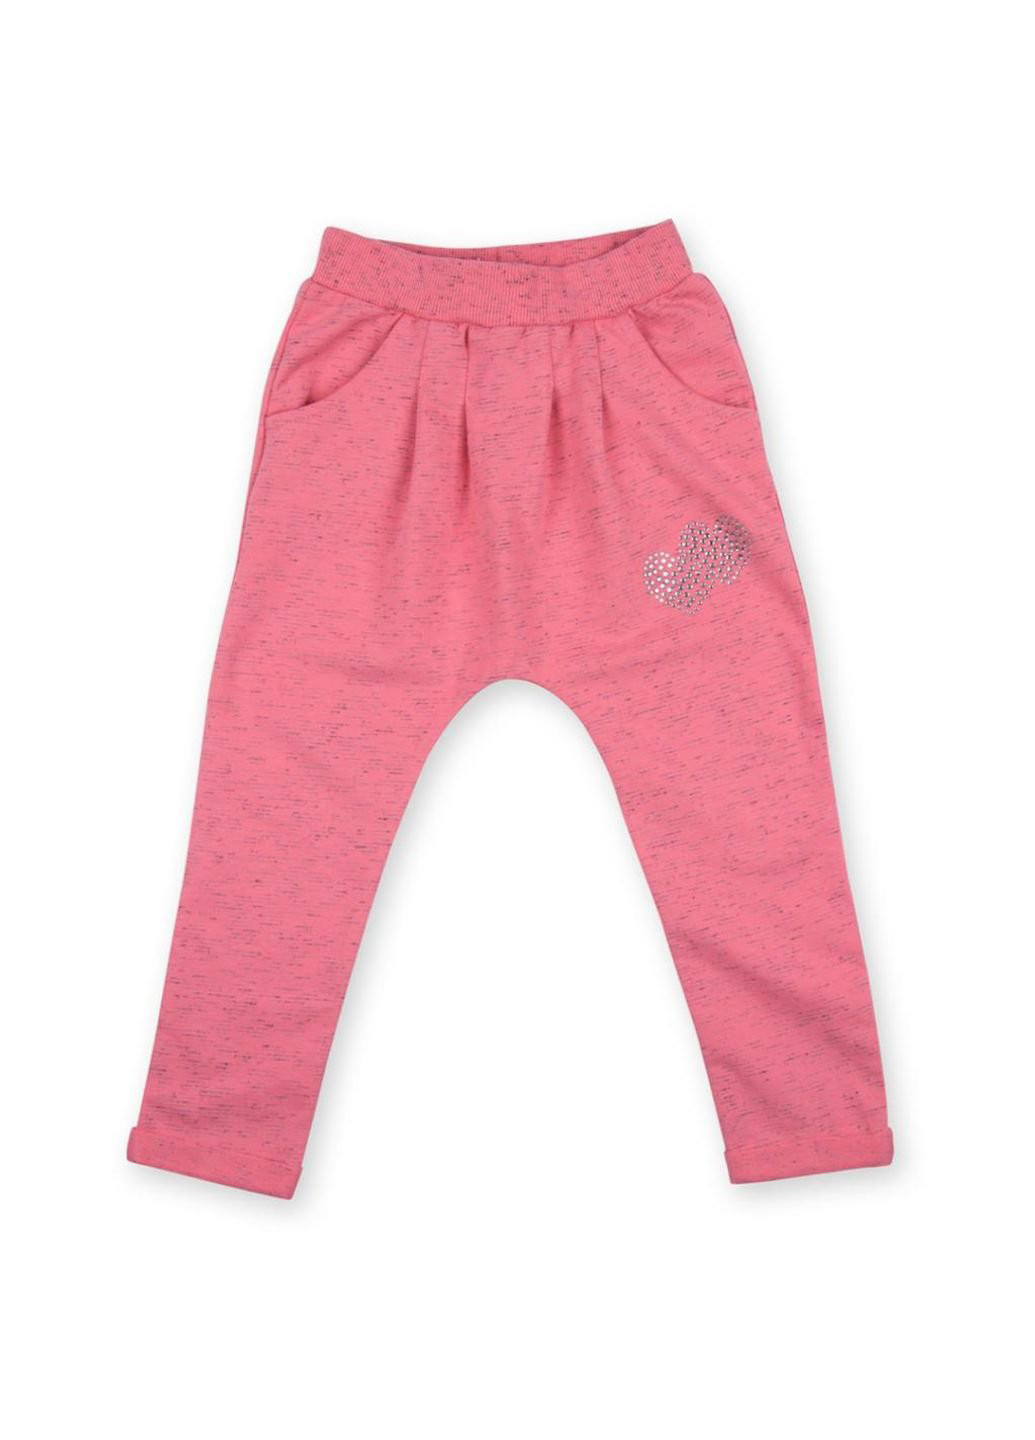 Коралловый набор детской одежды кофта и брюки персиковый меланж (8013-92g-peach) Breeze